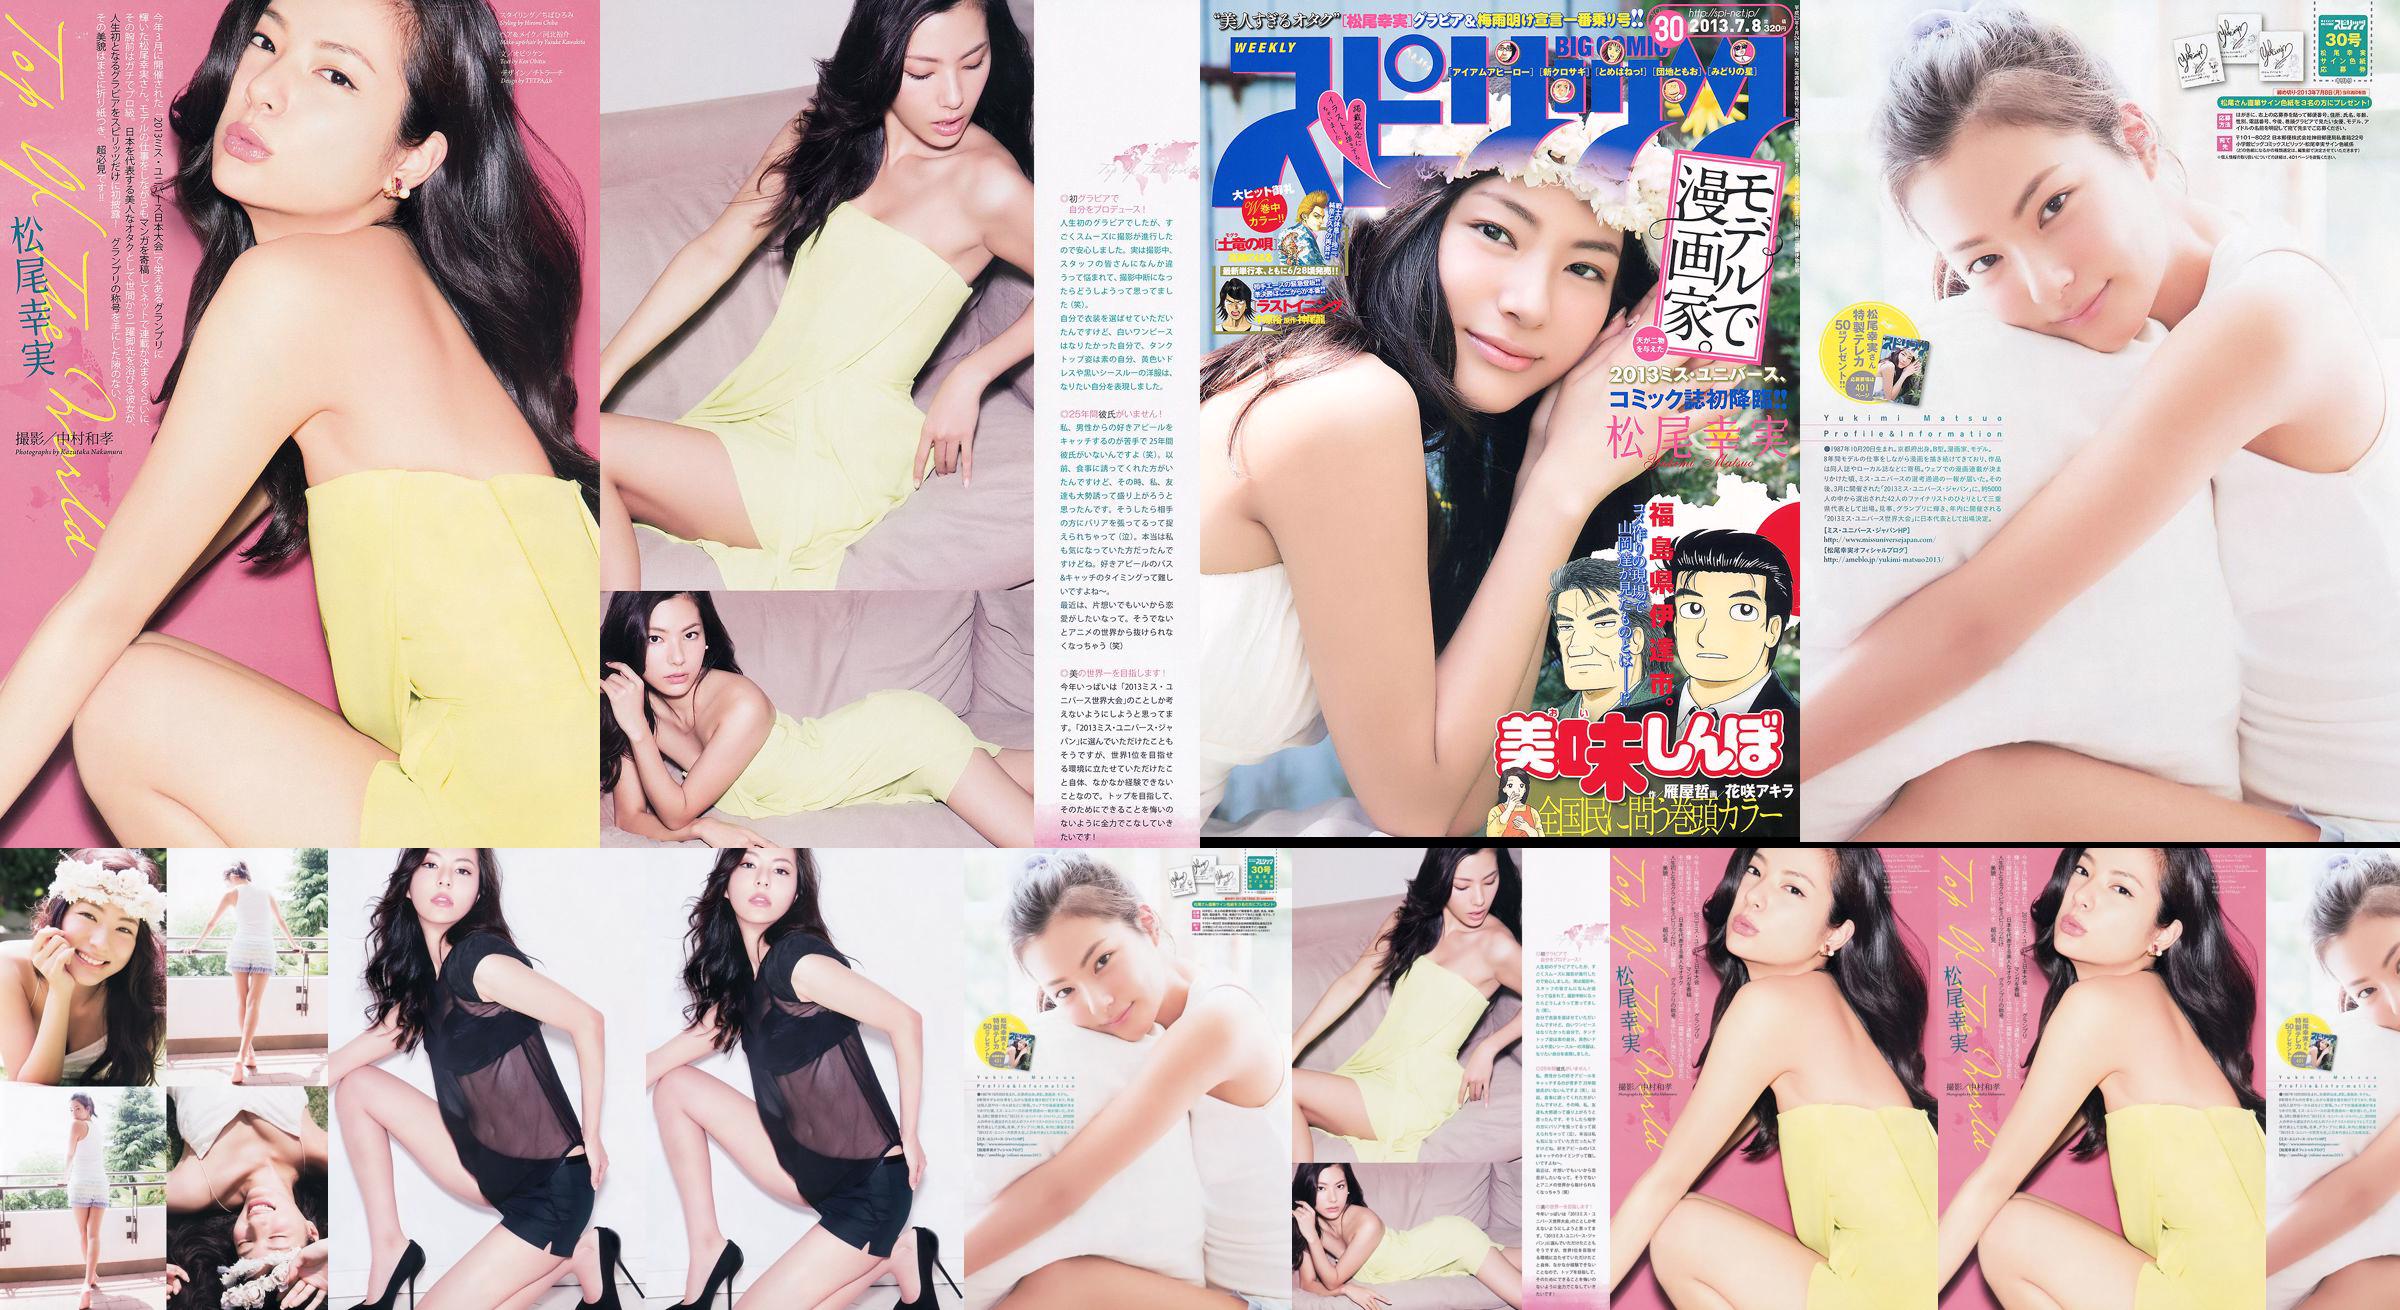 [Weekly Big Comic Spirits] Komi Matsuo 2013 No.30 Photo Magazine No.fb86df Pagina 1